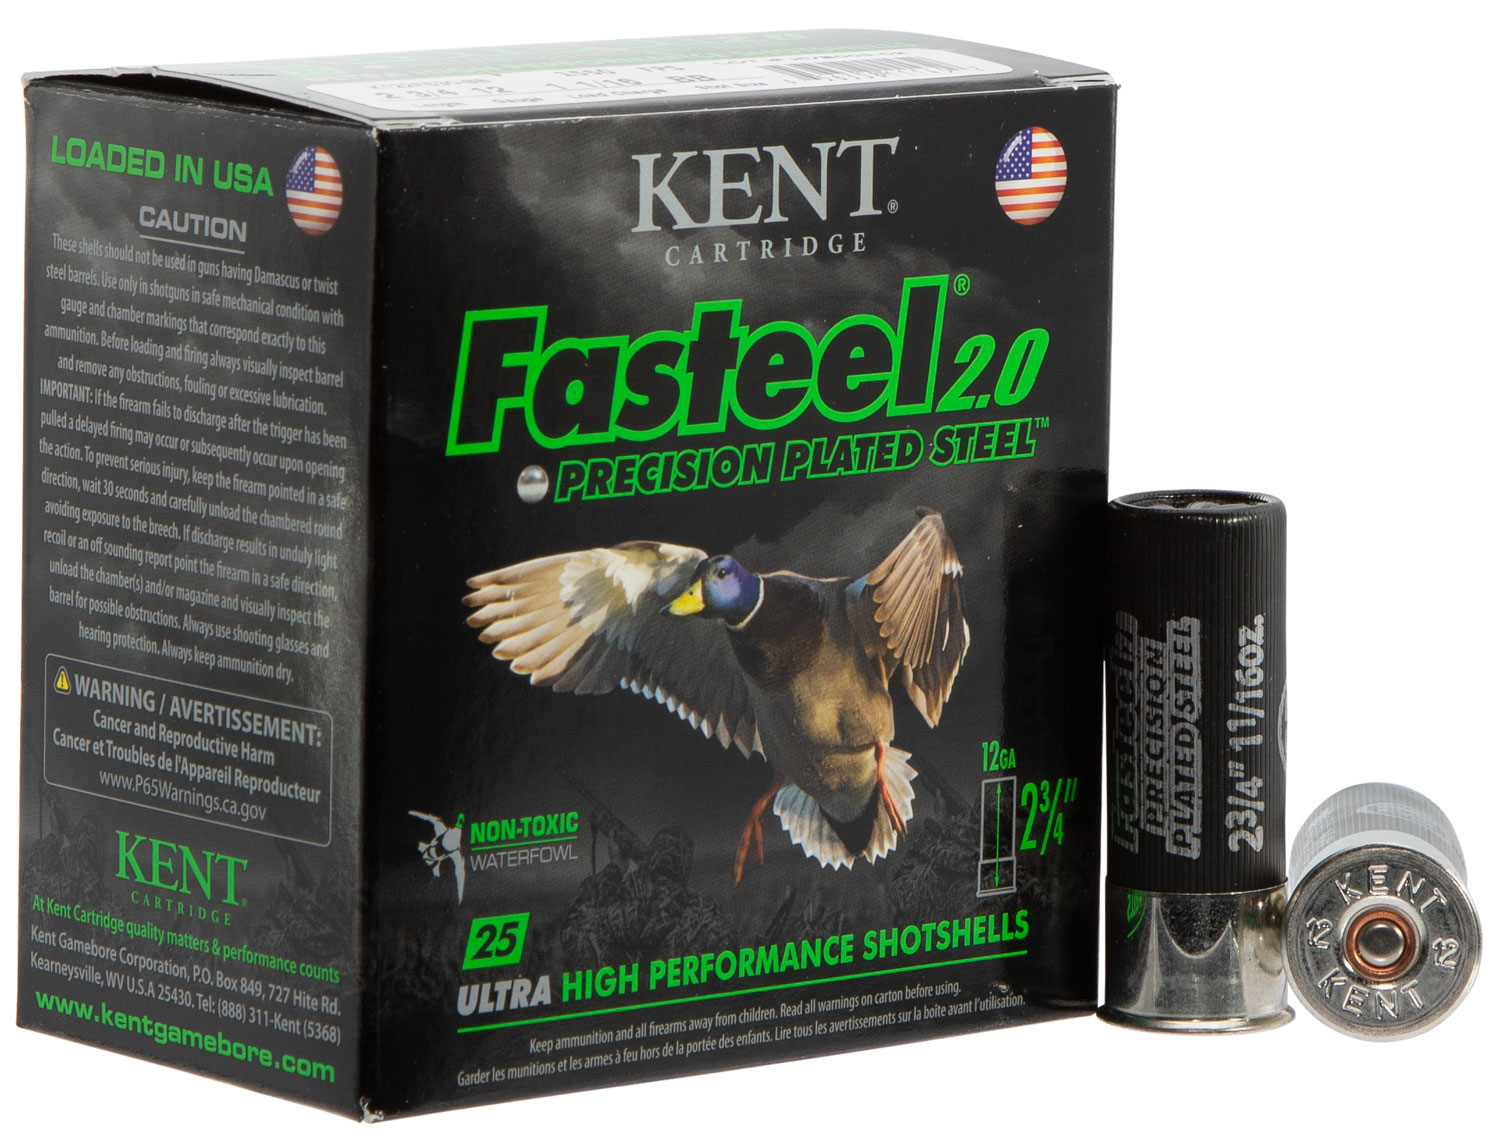 Kent Cartridge K122FS30BB Fasteel 2.0  12 Gauge 2.75